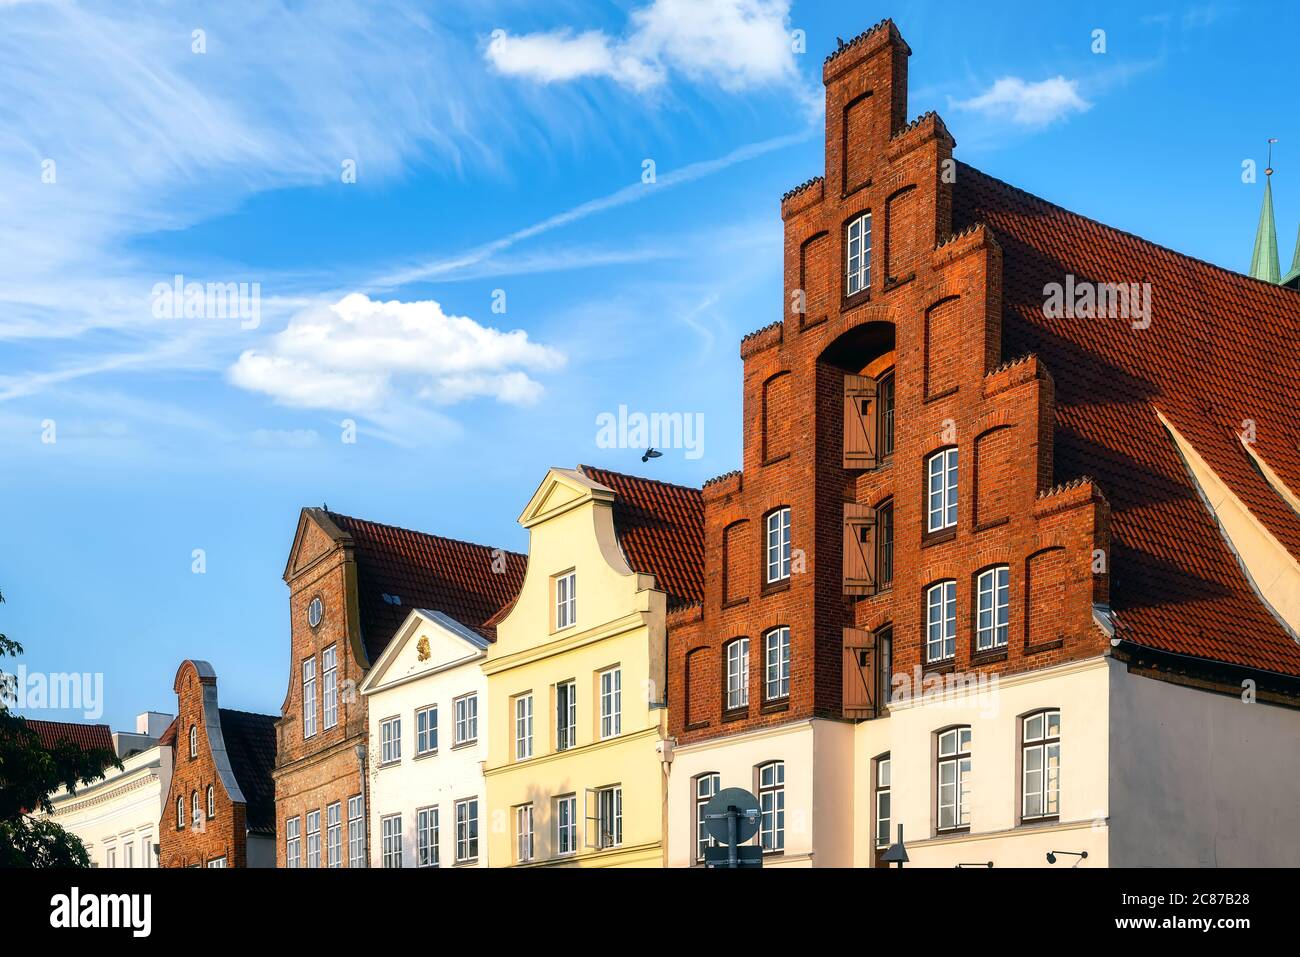 Scuderie di vecchie case nel centro storico della città anseatica Lubecca-Lübeck, Germania Foto Stock